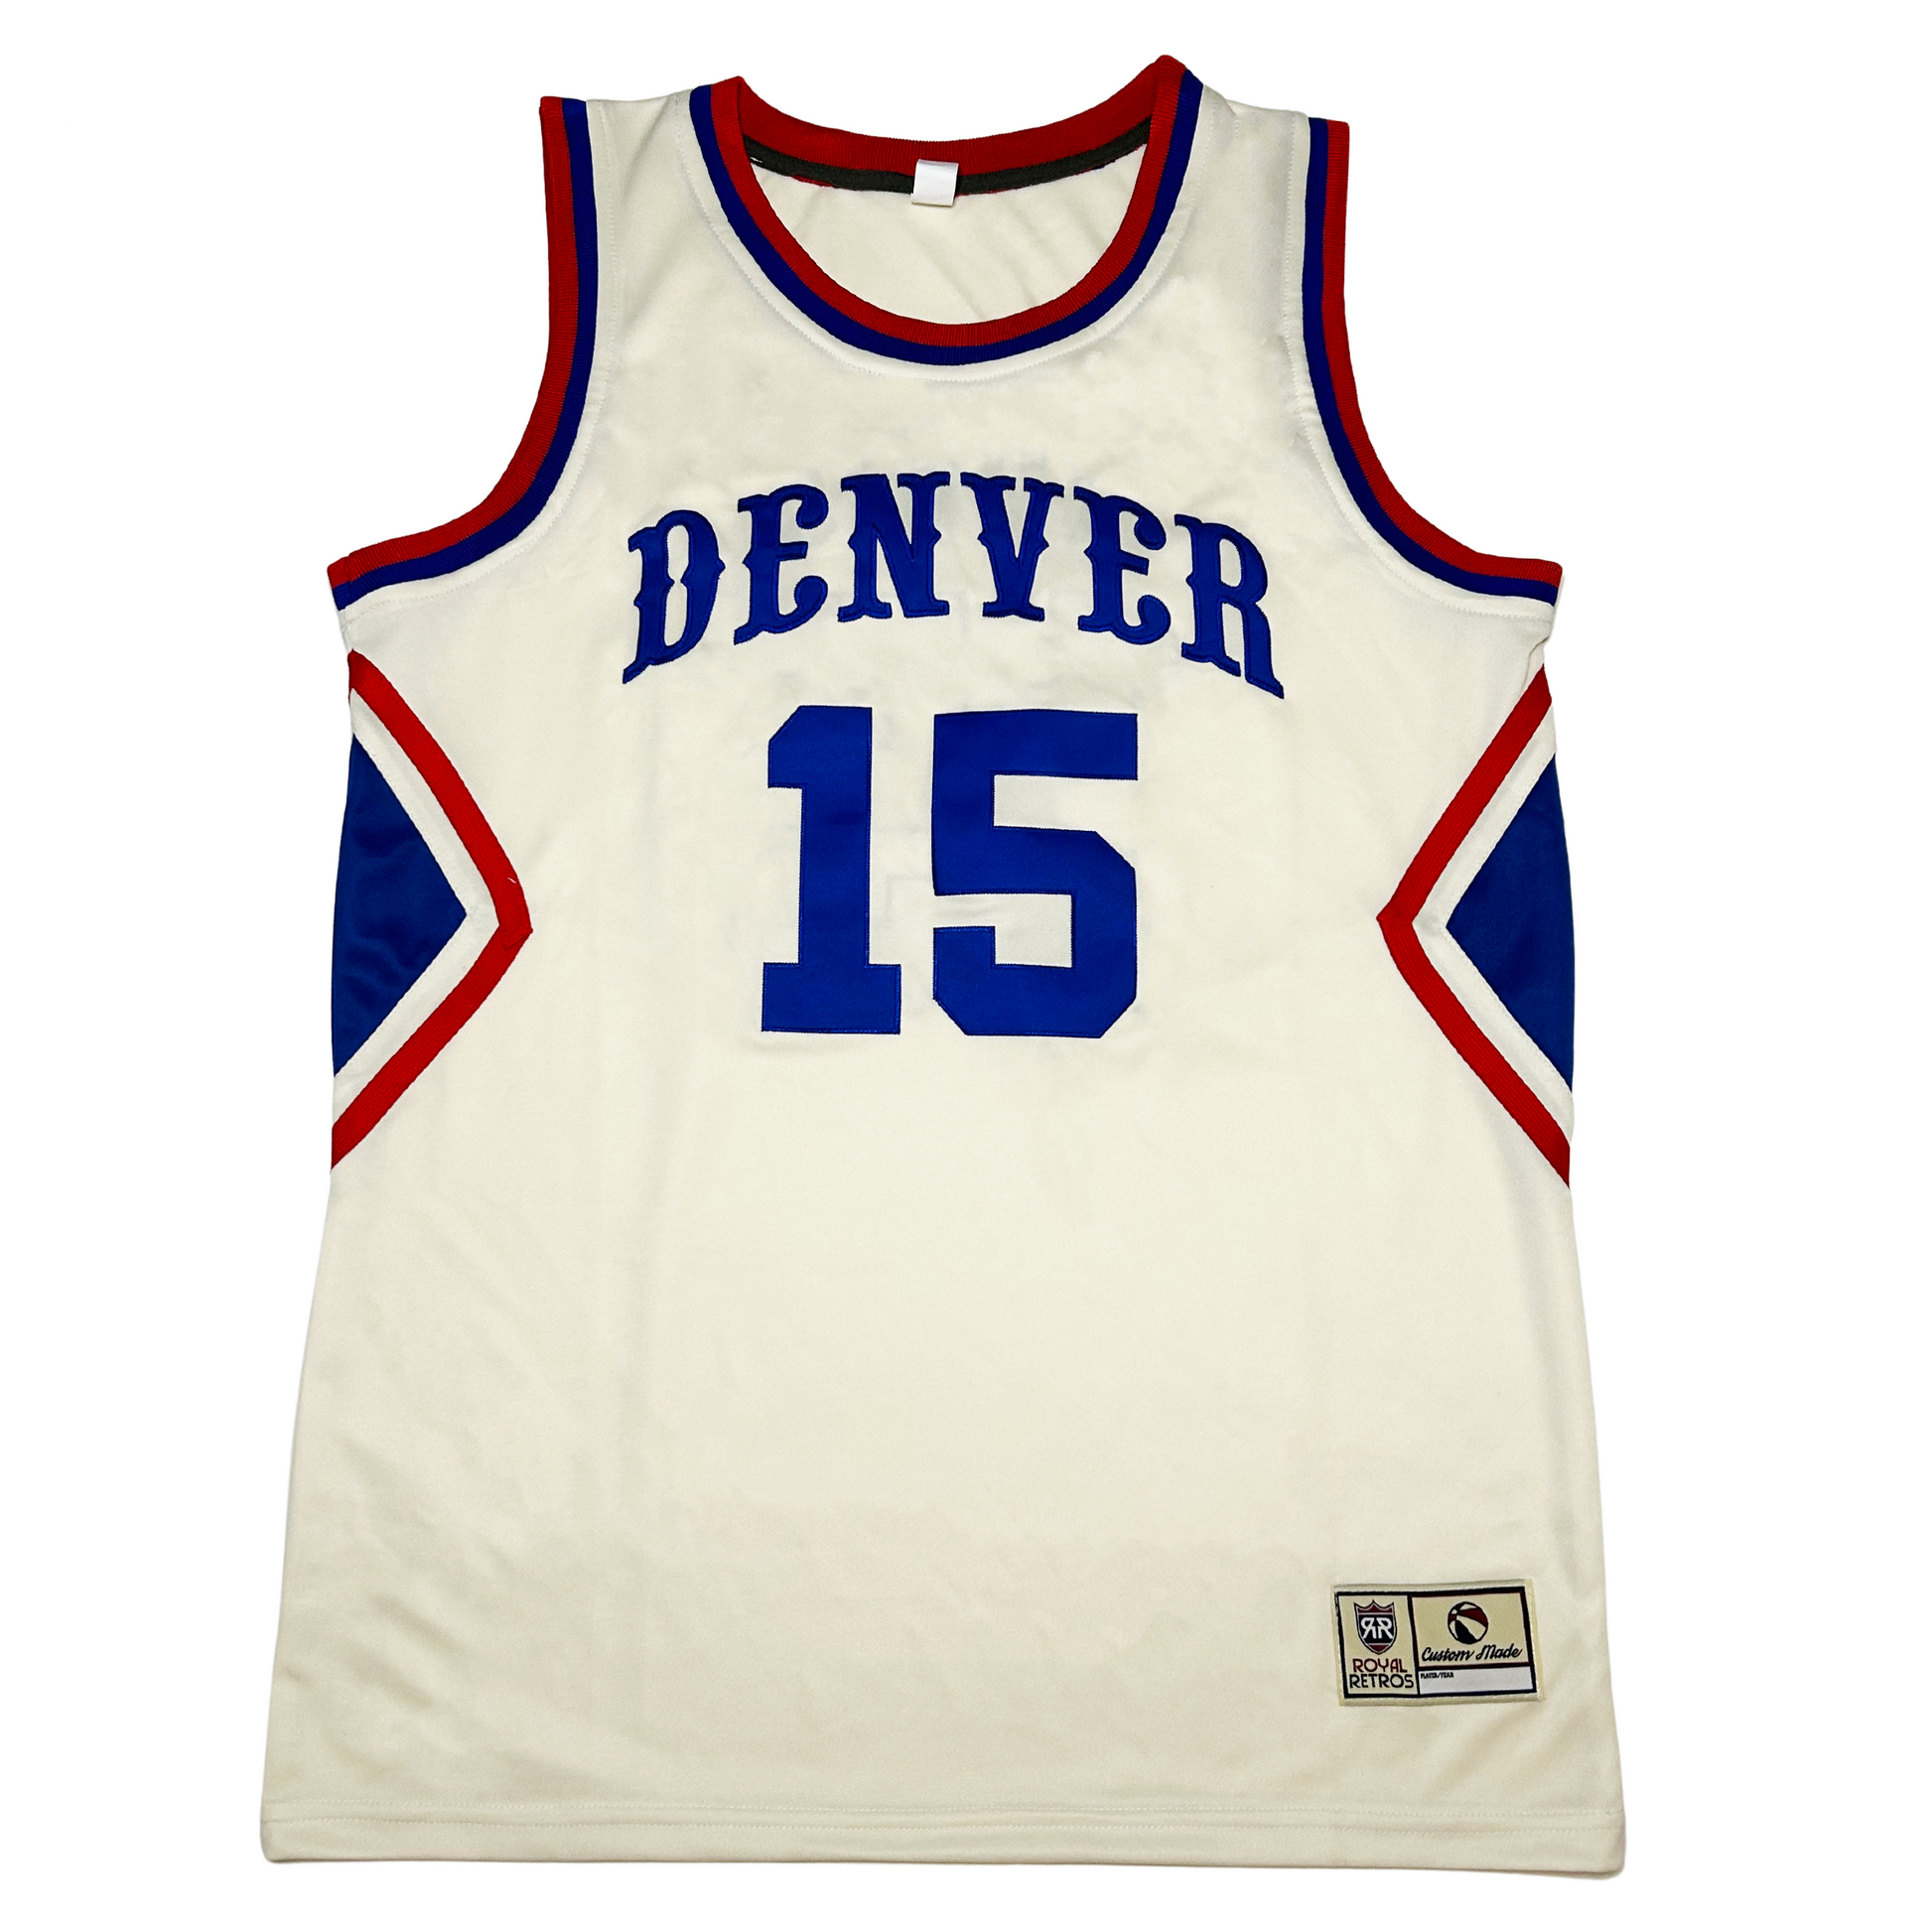 Denver Cream Collection Basketball Jersey - Medium - Royal Retros